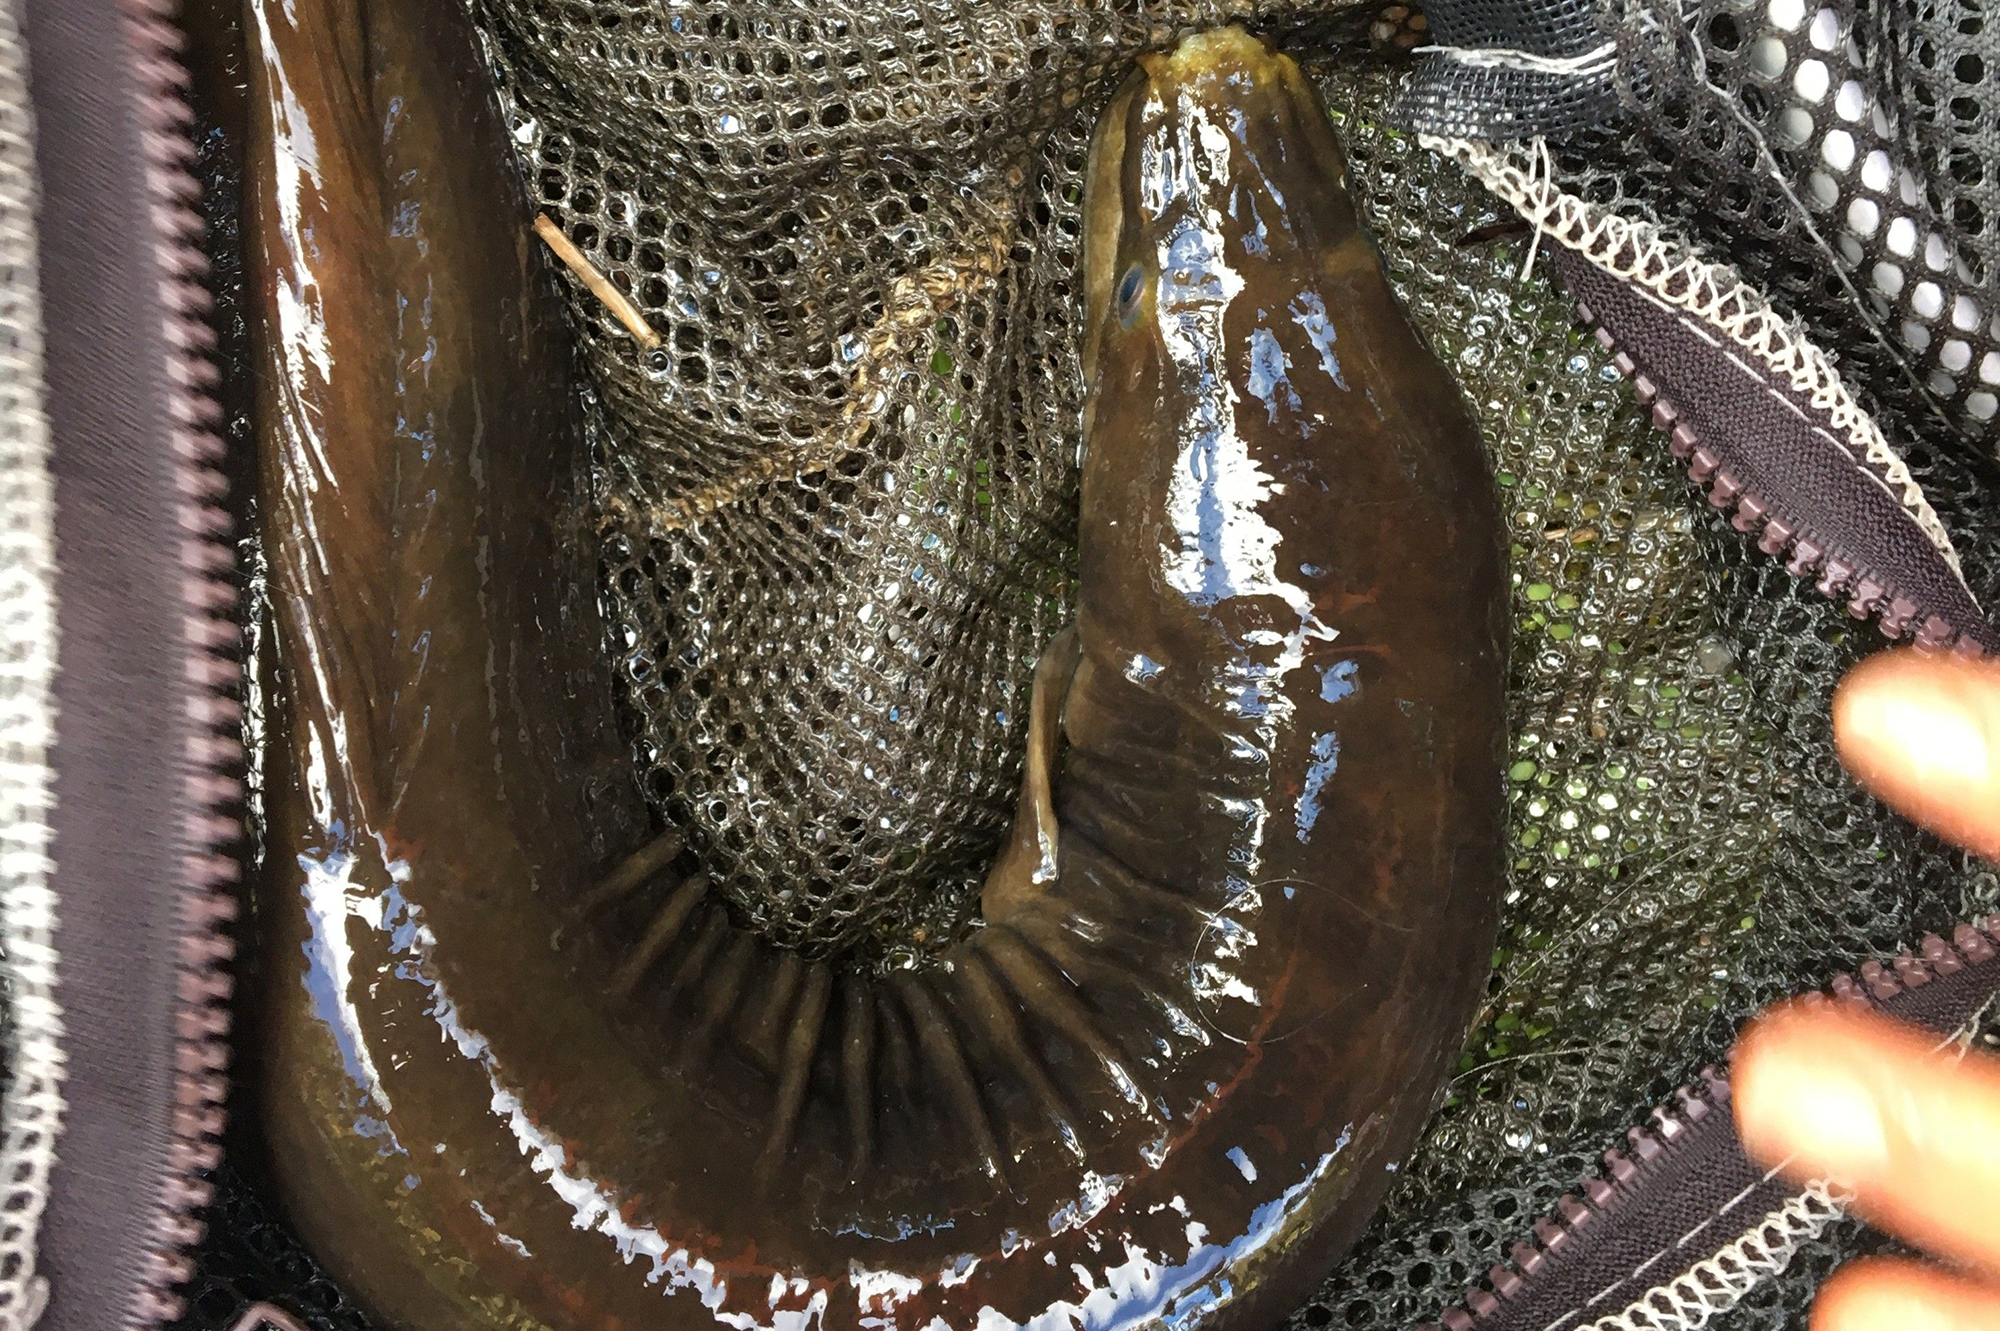 Eel in a net